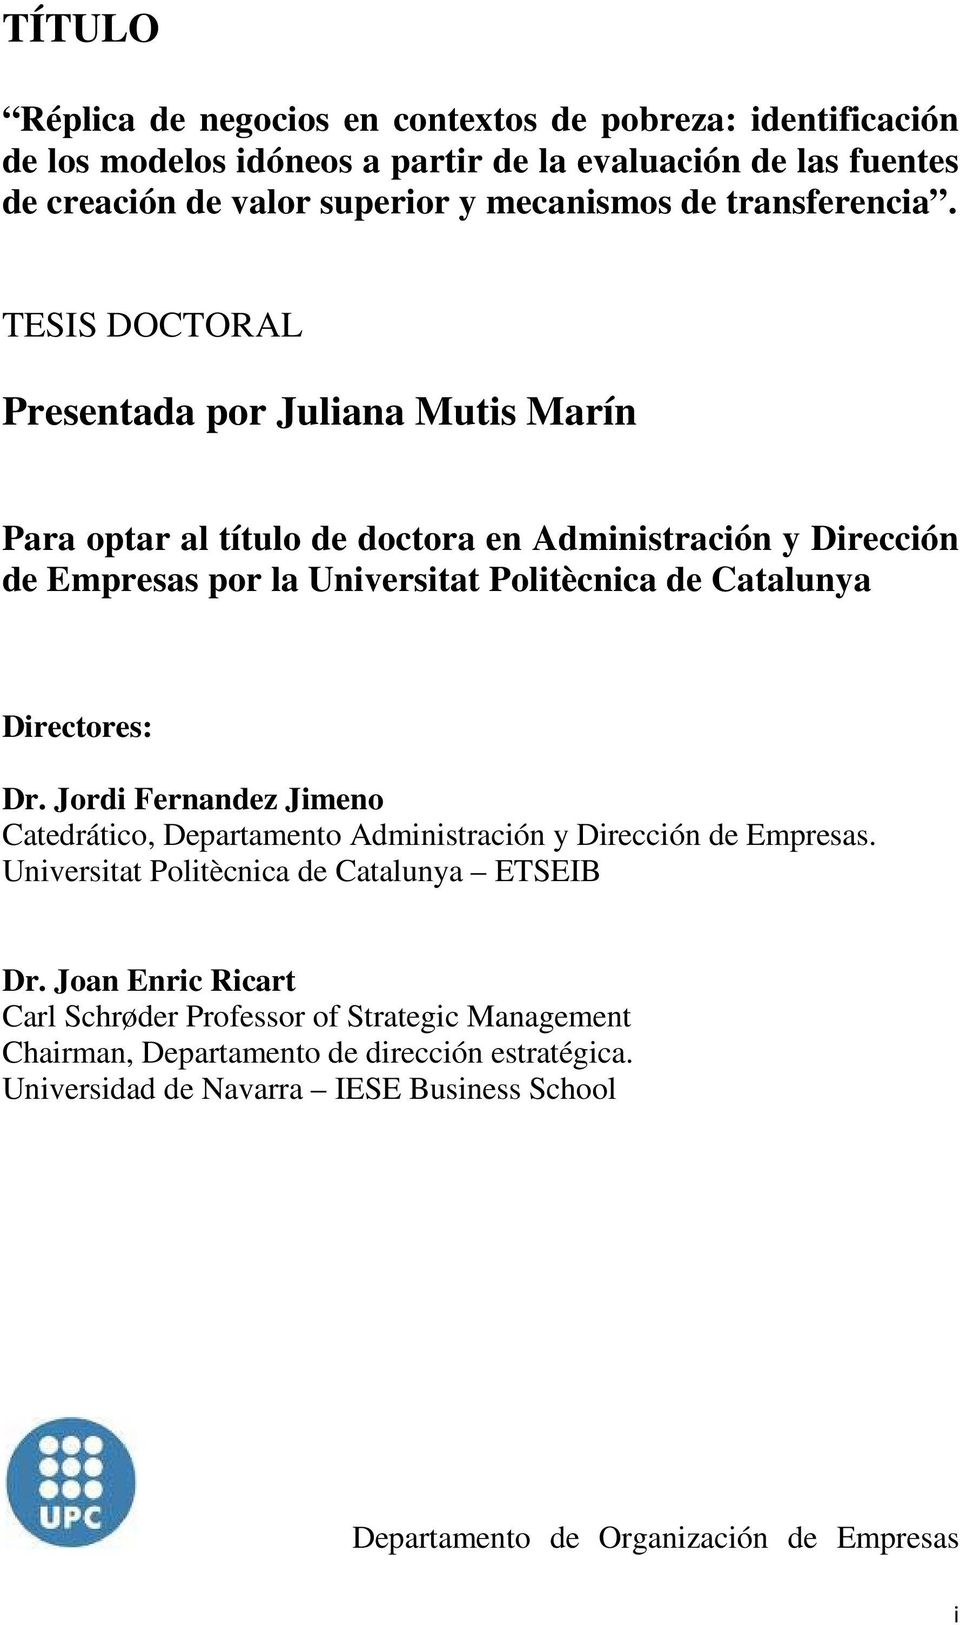 TESIS DOCTORAL Presentada por Juliana Mutis Marín Para optar al título de doctora en Administración y Dirección de Empresas por la Universitat Politècnica de Catalunya